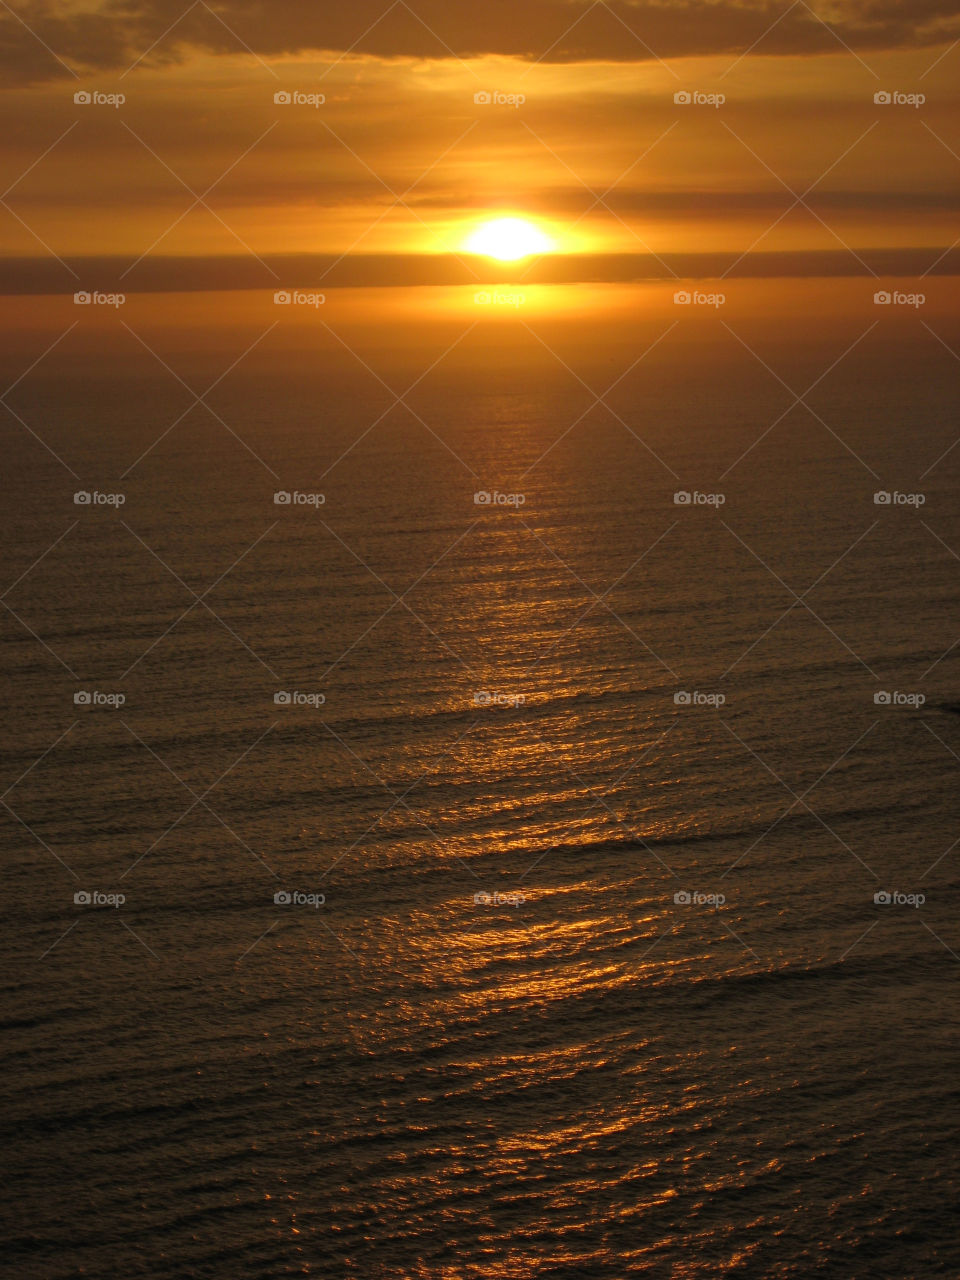 lima peru sunset sea pacific. by Belnahua